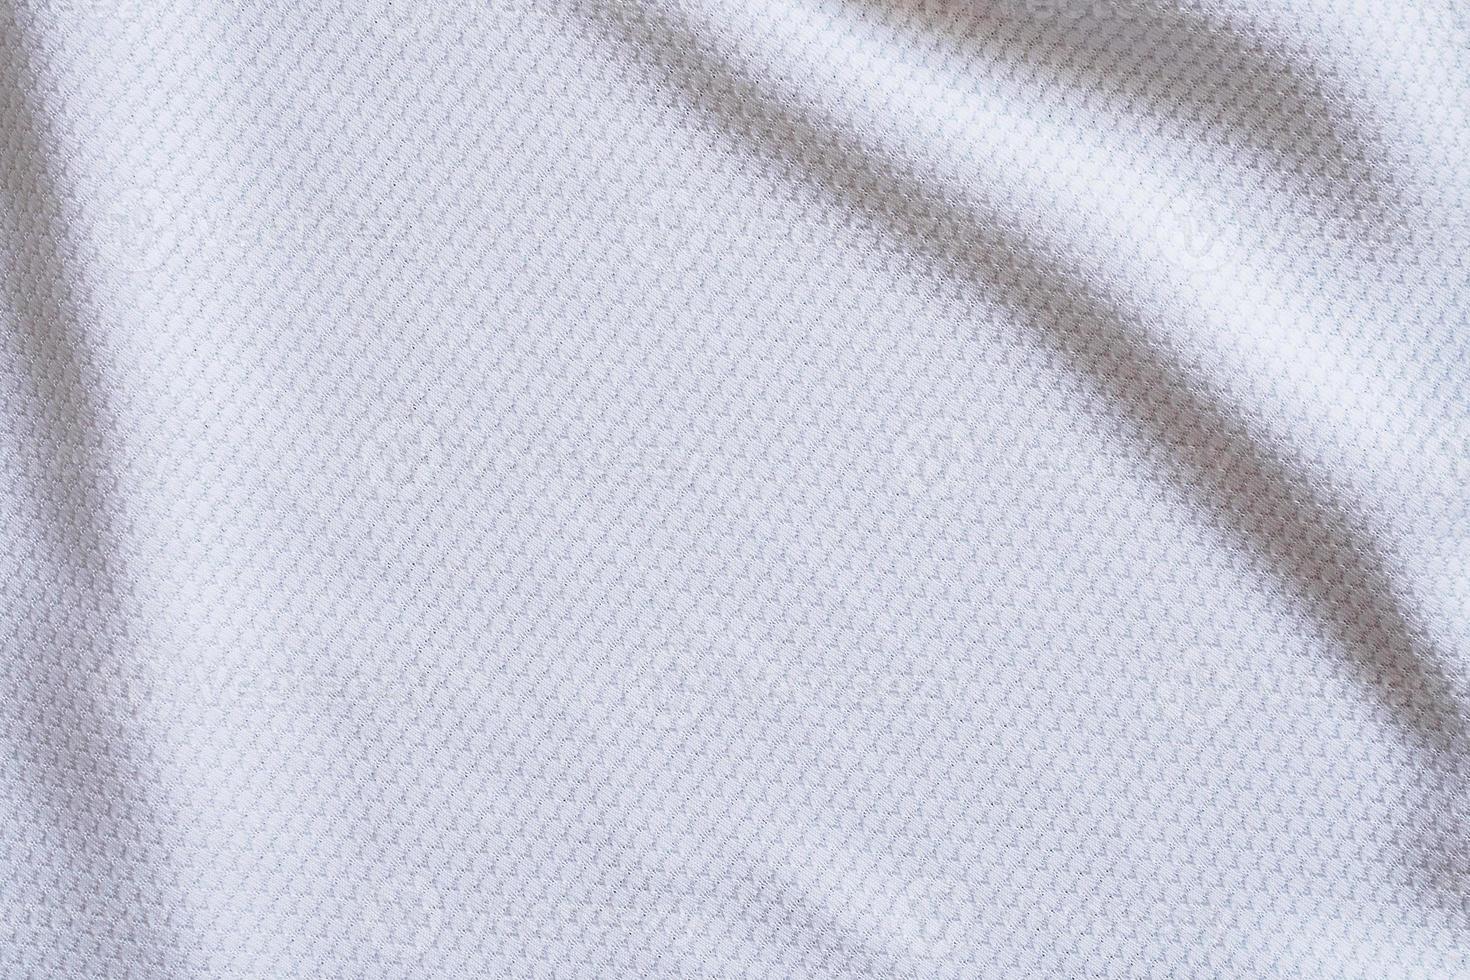 weißer fußball trikot kleidung stoff textur sportbekleidung hintergrund foto